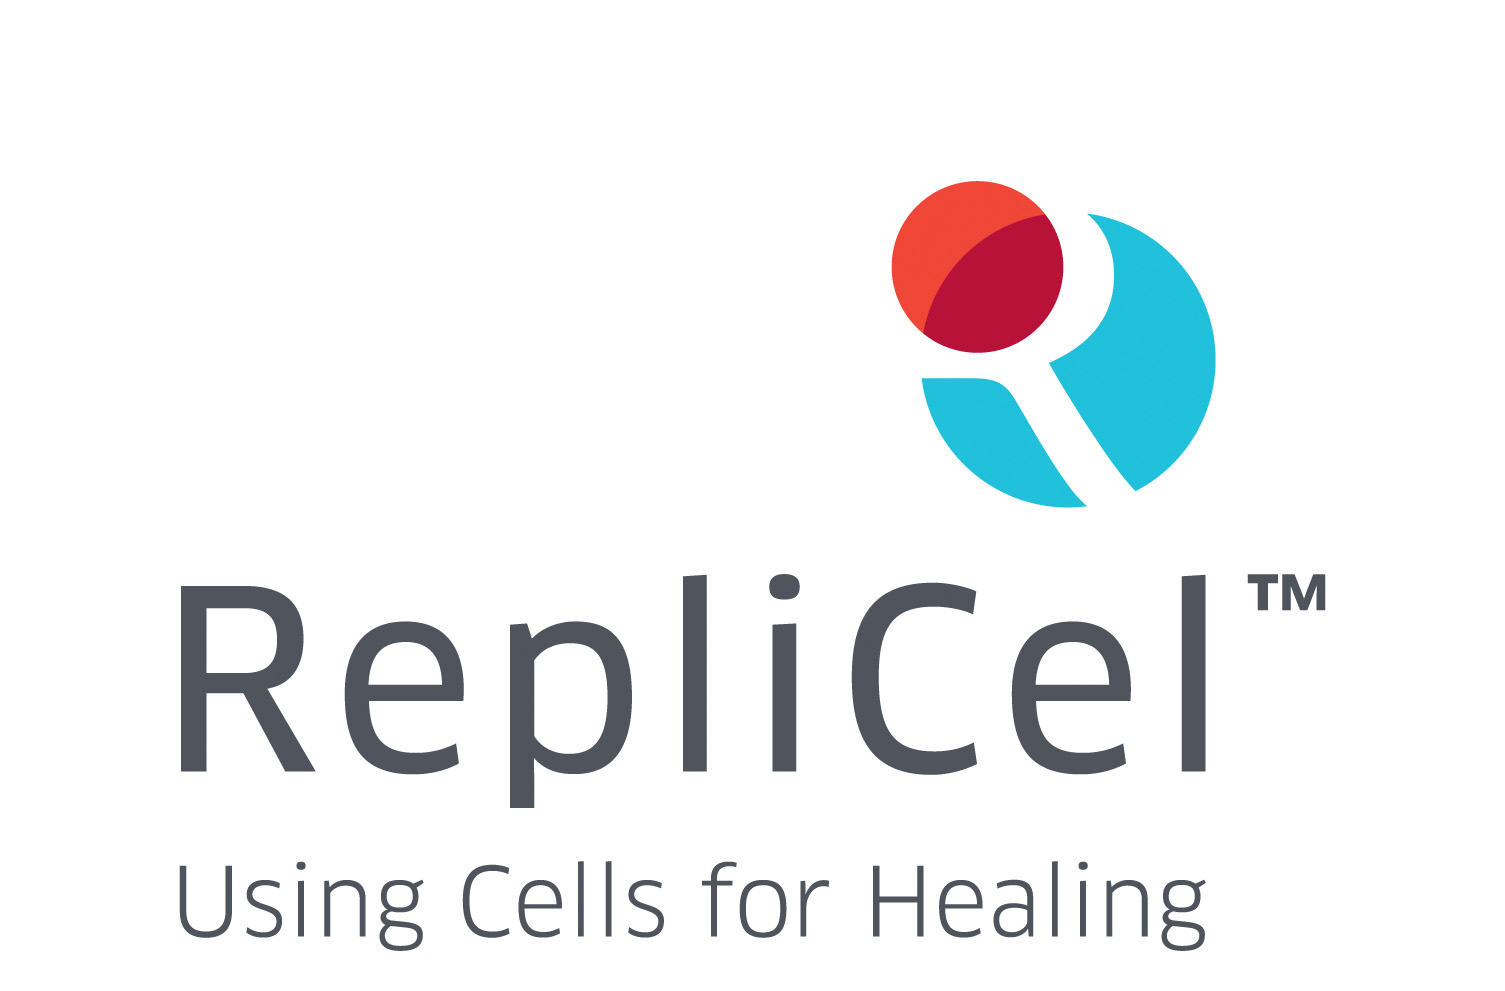 RepliCel Life Sciences, Inc., Thursday, April 29, 2021, Press release picture